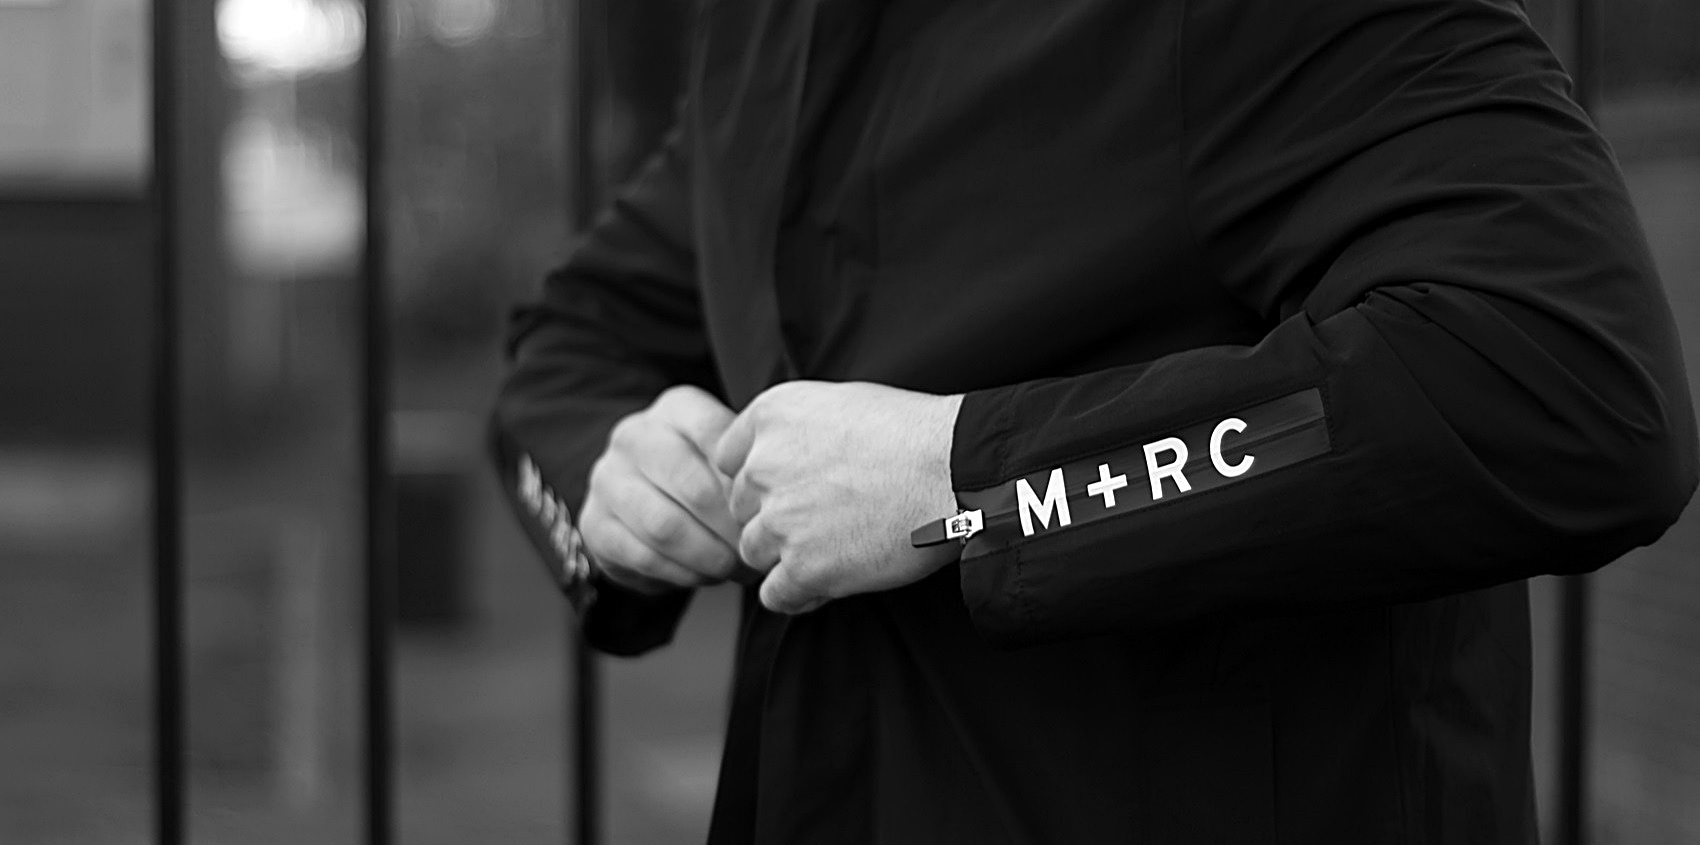 M+RC NOIR | マルシェノアの高額買い取りはモードスケープにお任せください